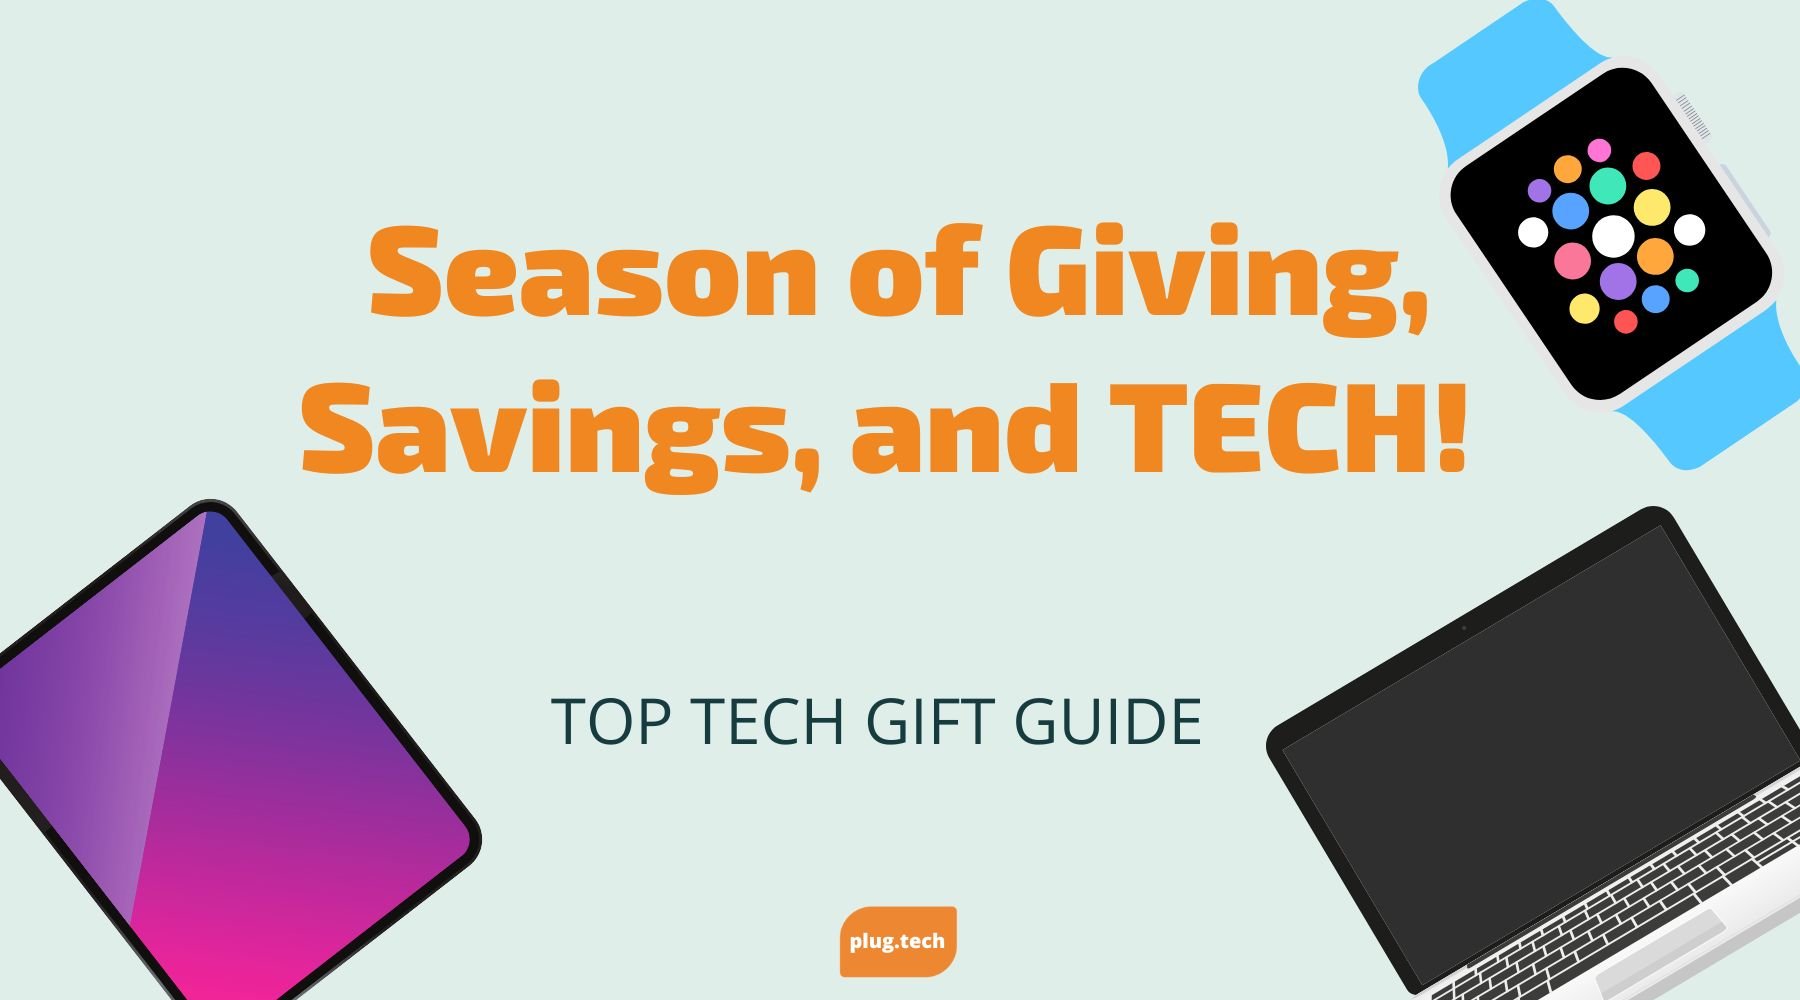 Holiday Gift Guide 2022 - Season of Giving, Savings, and TECH!